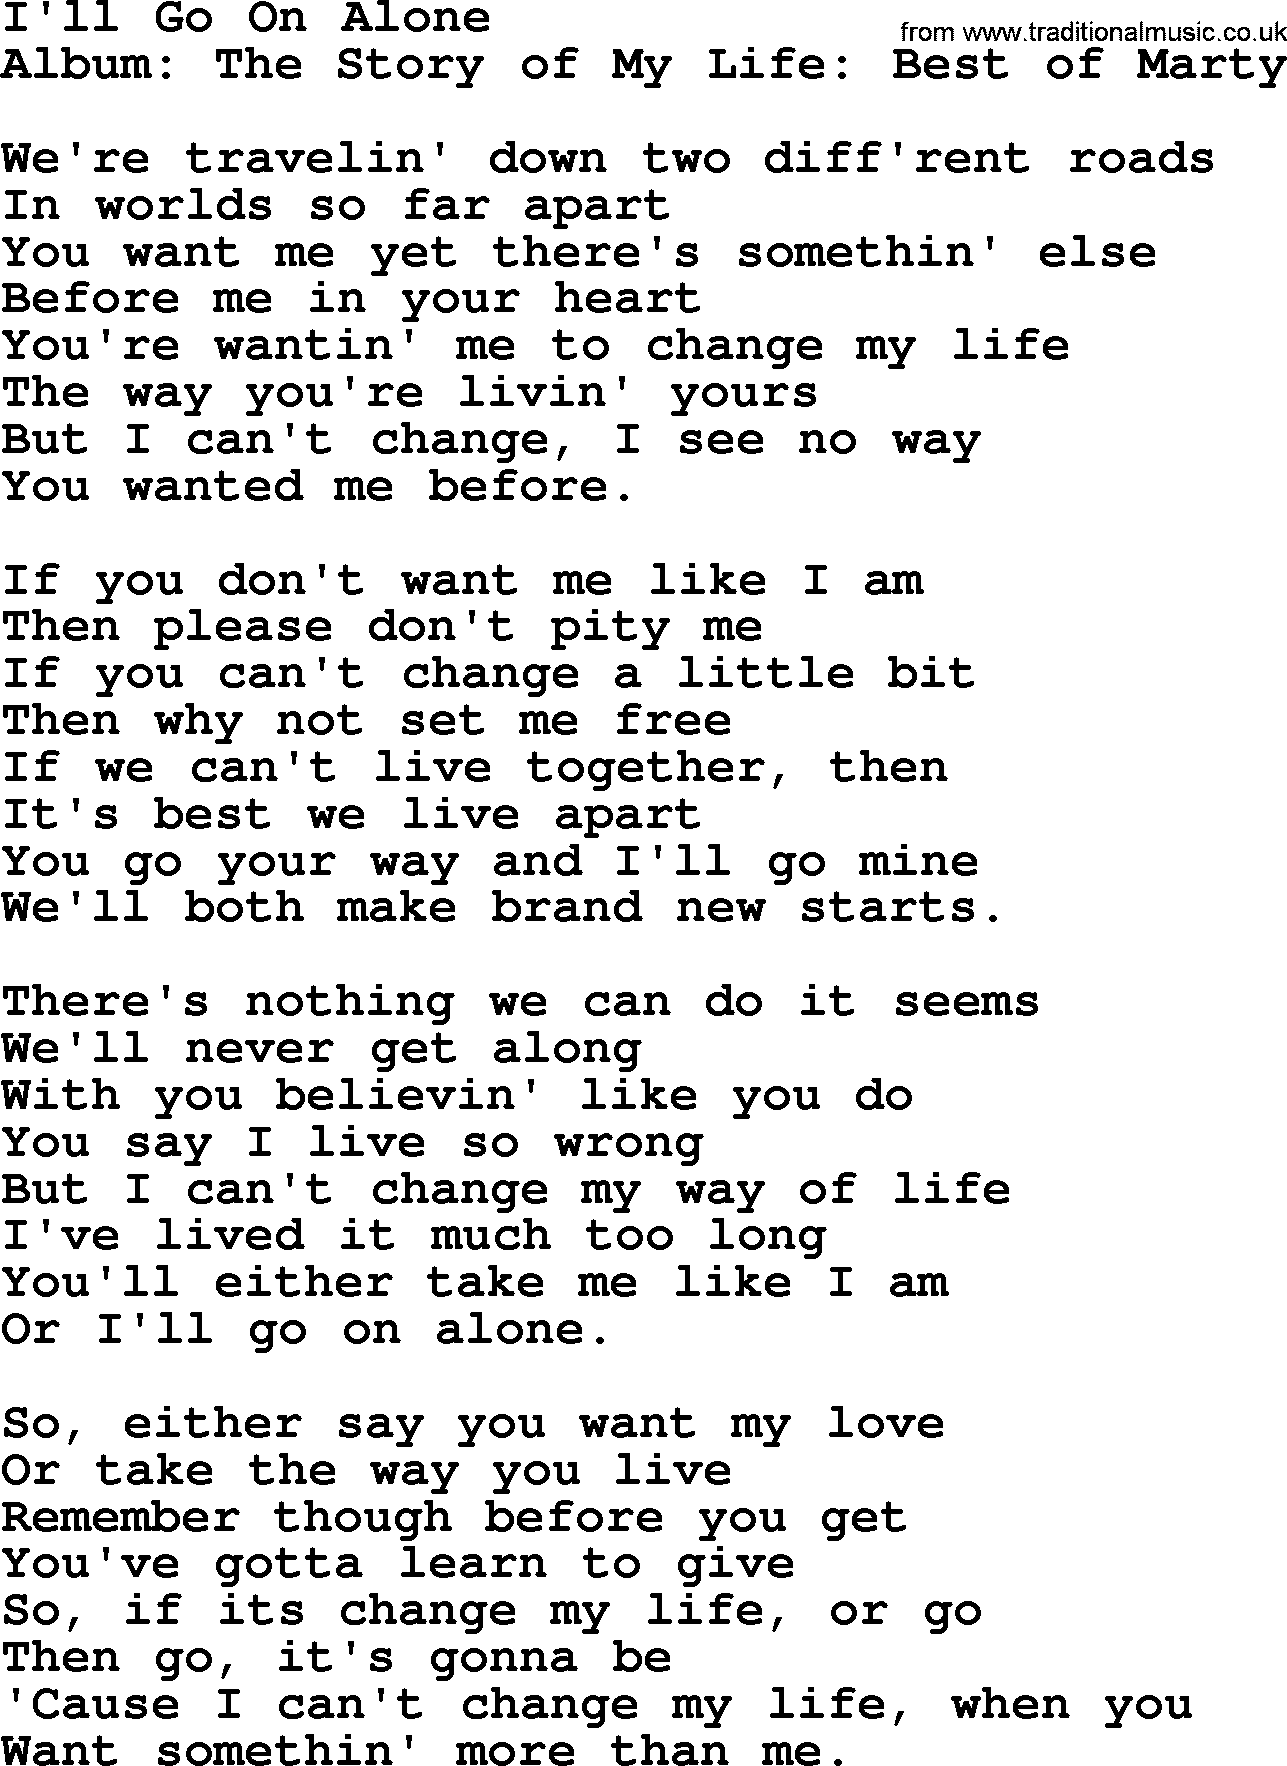 Marty Robbins song: I'll Go On Alone, lyrics